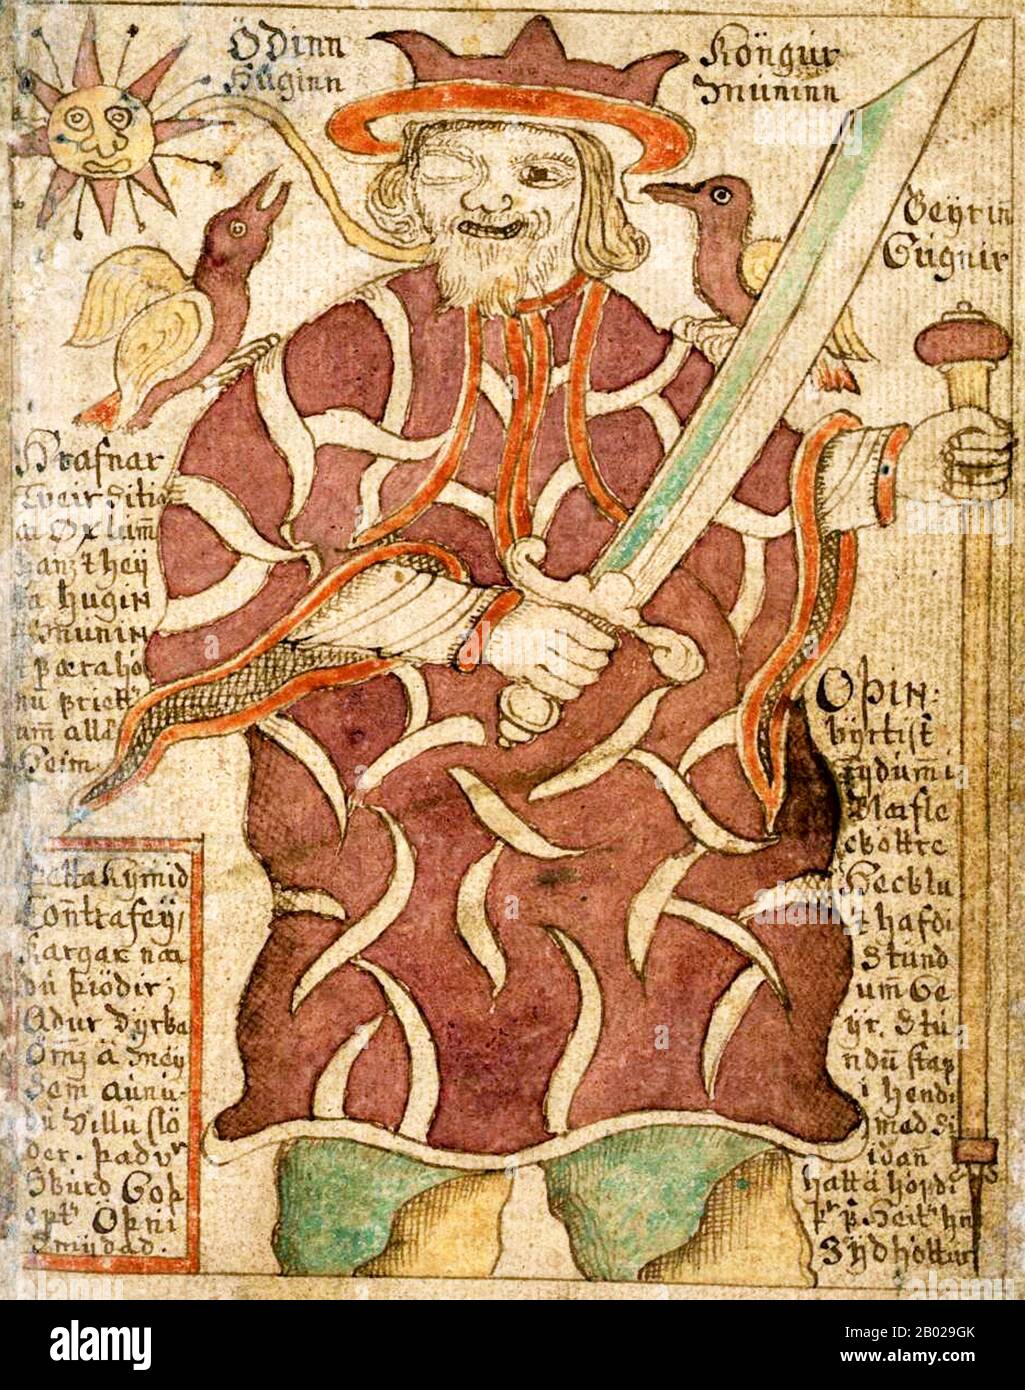 Odin (von Altnordisch Óðinn) ist ein bedeutender gott in der nordischen Mythologie, der Allvater der Götter und der Feldherr von Asgard. Seine Rolle ist, wie die vieler nordische Götter, komplex. Odin ist ein Hauptmitglied des AEsir (der großen Gruppe des norischen Pantheons) und wird mit Krieg, Kampf, Sieg und Tod, aber auch Klugheit, Schamanismus, Magie, Poesie, Prophezeiung und Jagd in Verbindung gebracht. Odin hat viele Söhne, von denen der berühmteste der donnergott Thor ist. Der Mittwoch ist die einheitliche Form von Wodens Tag, da die meisten Wochentage nach den Norse-Göttern benannt sind. Stockfoto